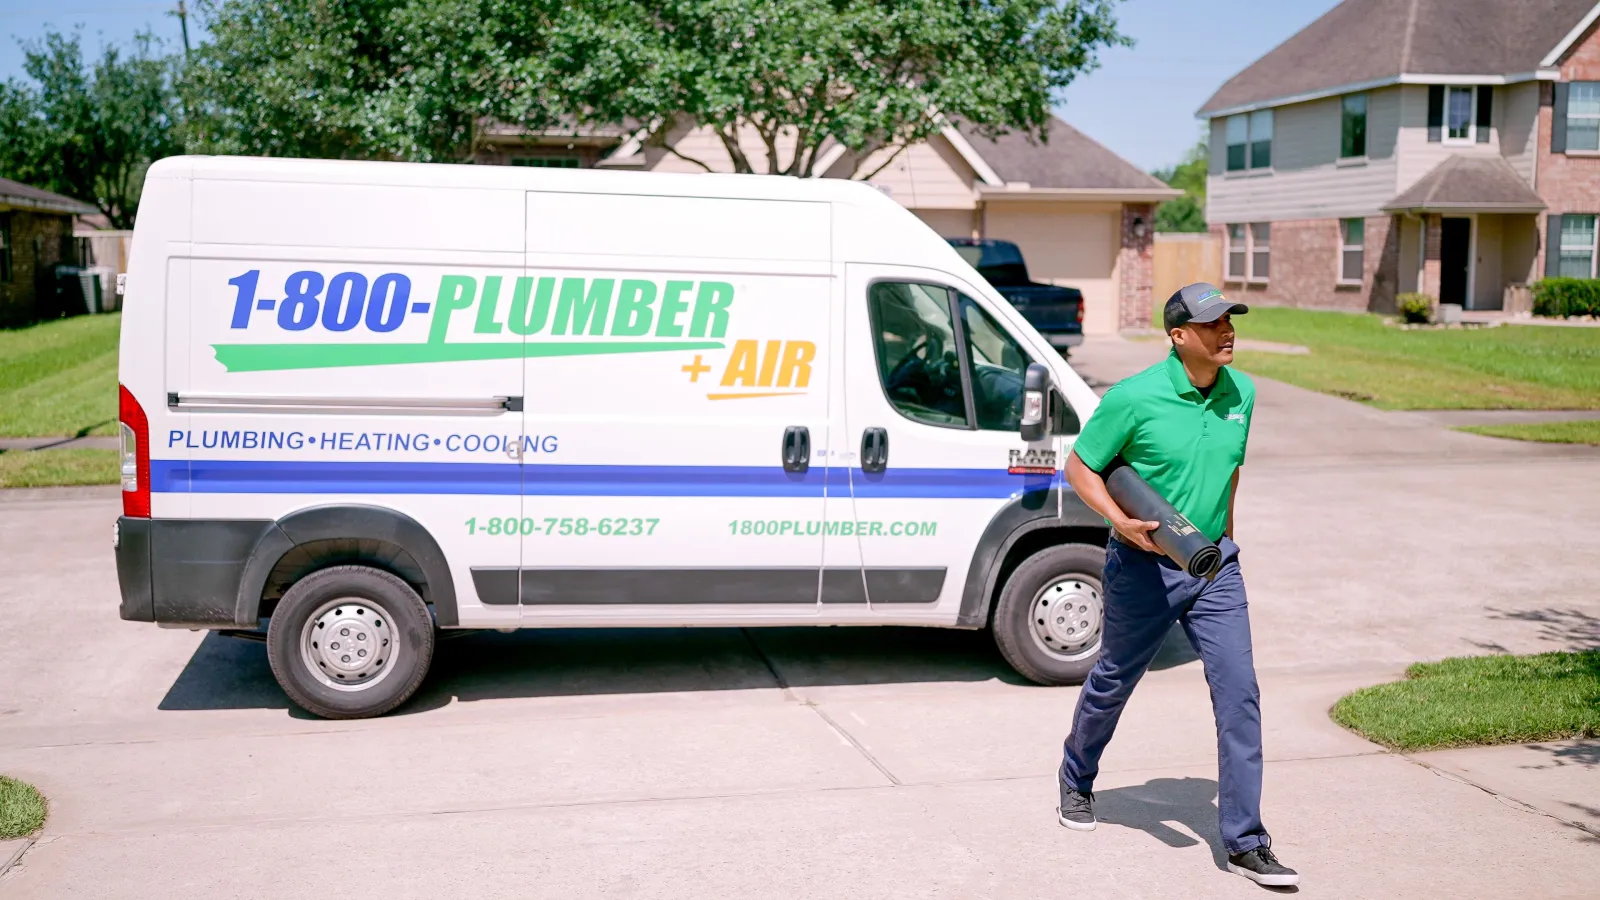 A Dallas bathroom plumber arrives in a van